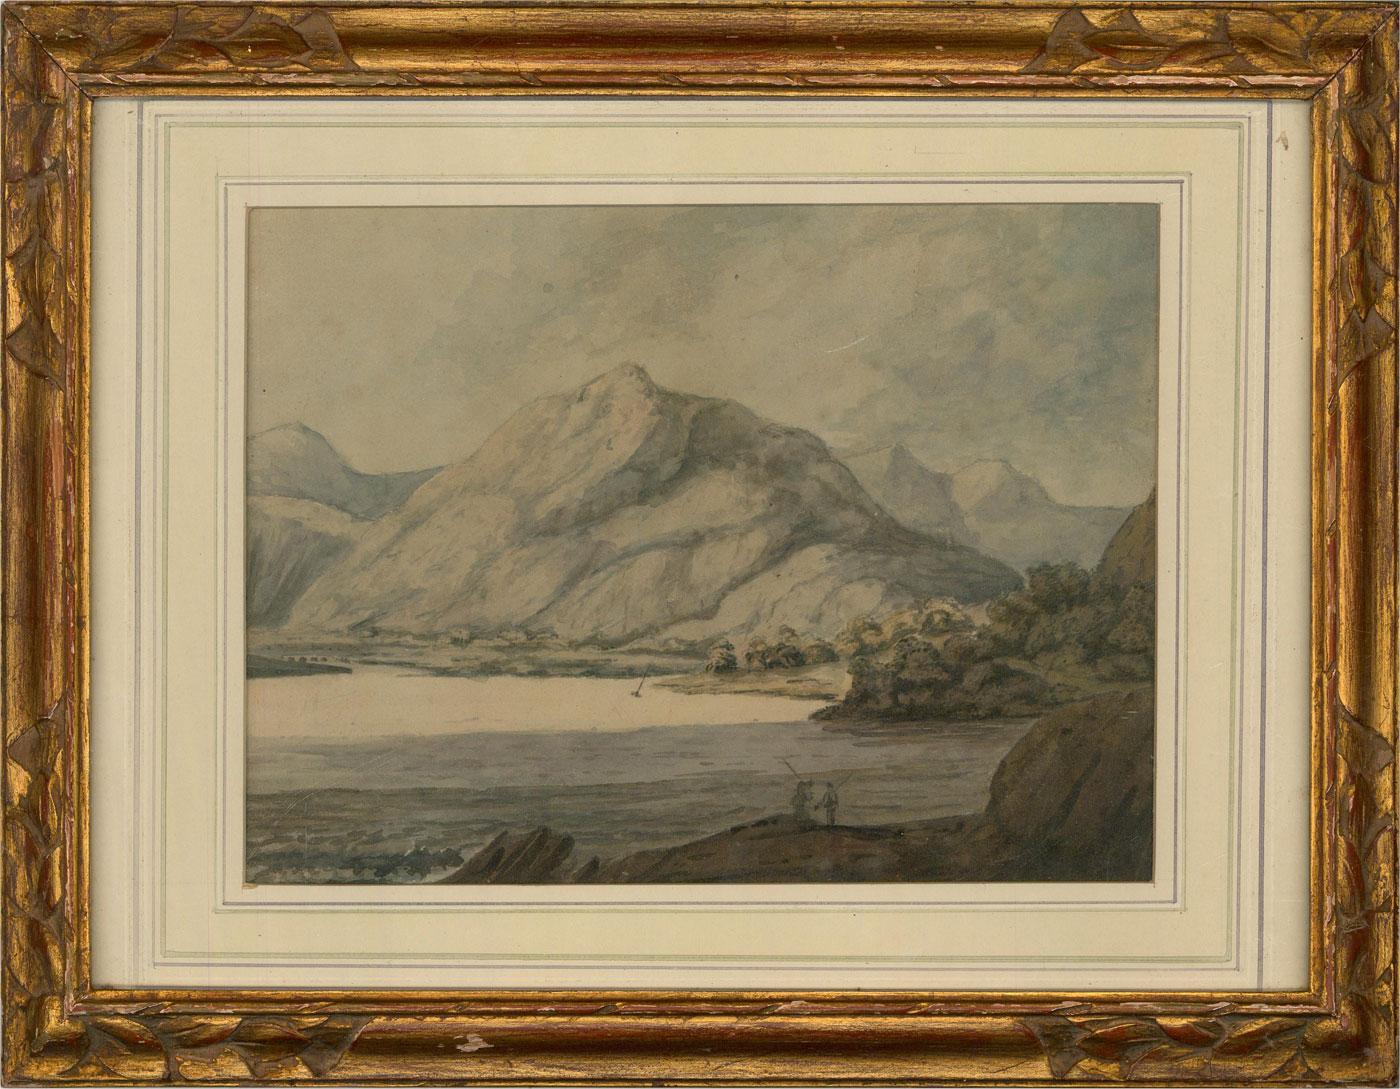 Unknown Landscape Art - Early 19th Century Watercolour - Loch Long